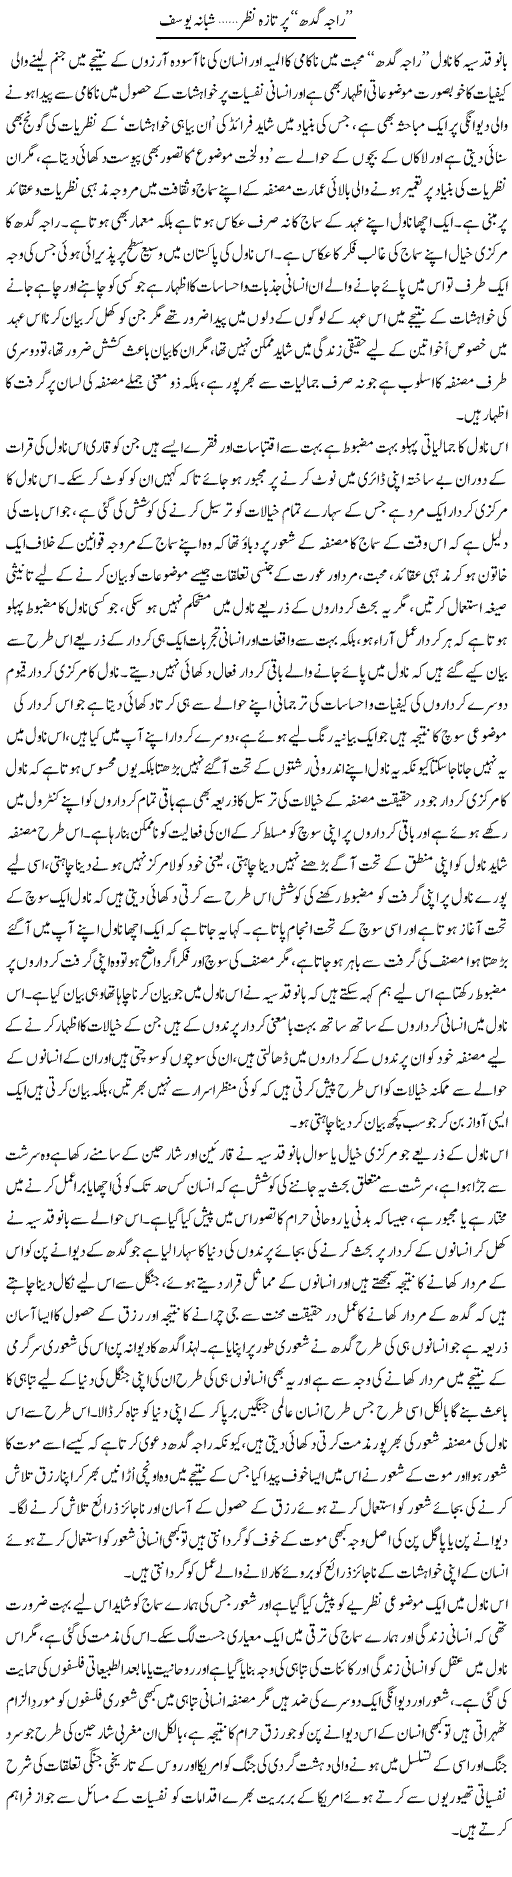 Raja Gidh Par Taaza Nazar (1) | Shabana Yousaf | Daily Urdu Columns